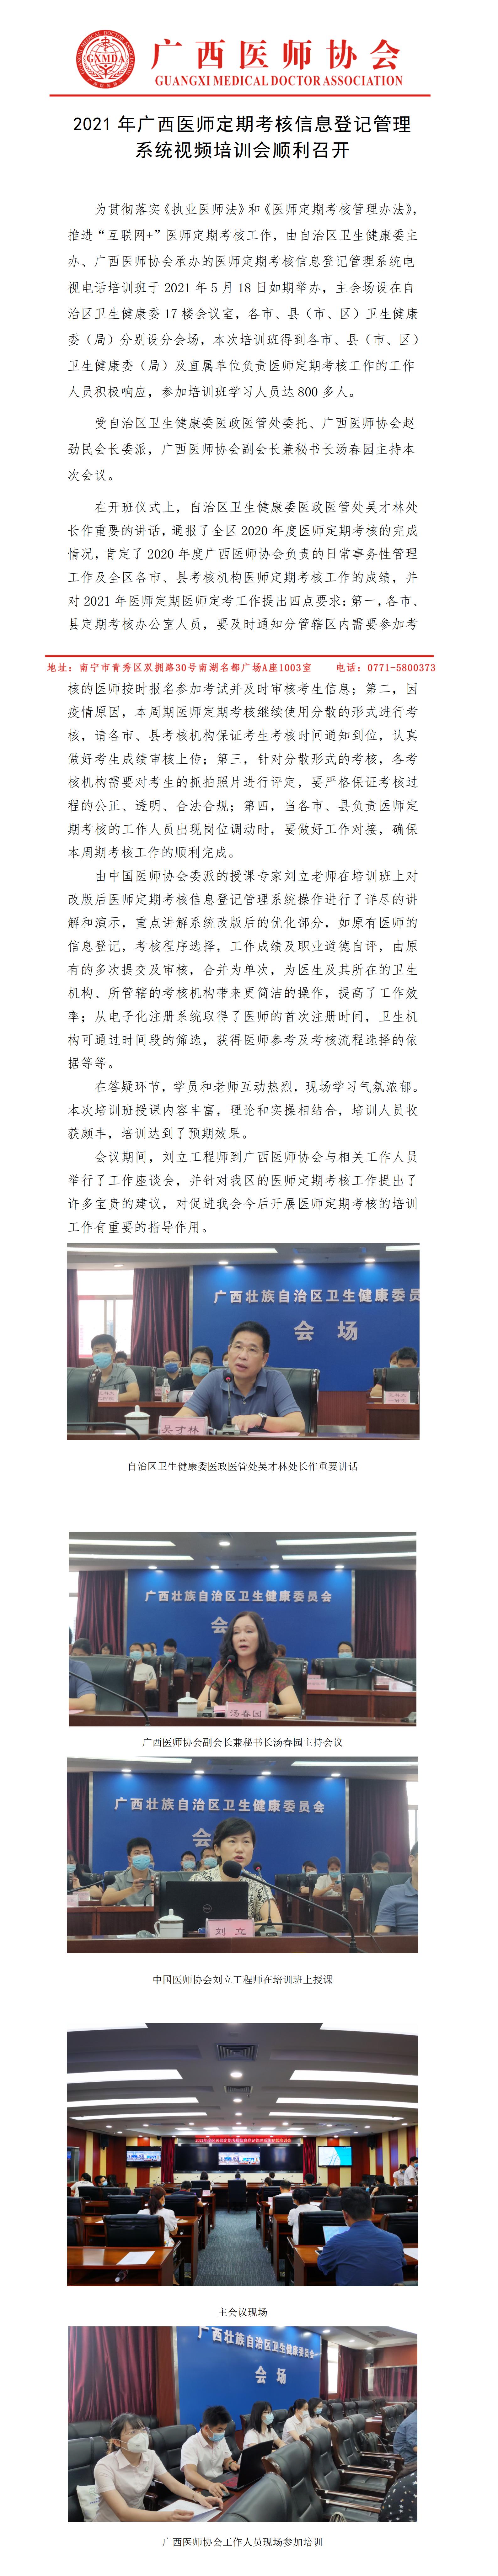 广西2021年医师定期考核信息登记管理系统视频培训会（2021.5.24）.jpg